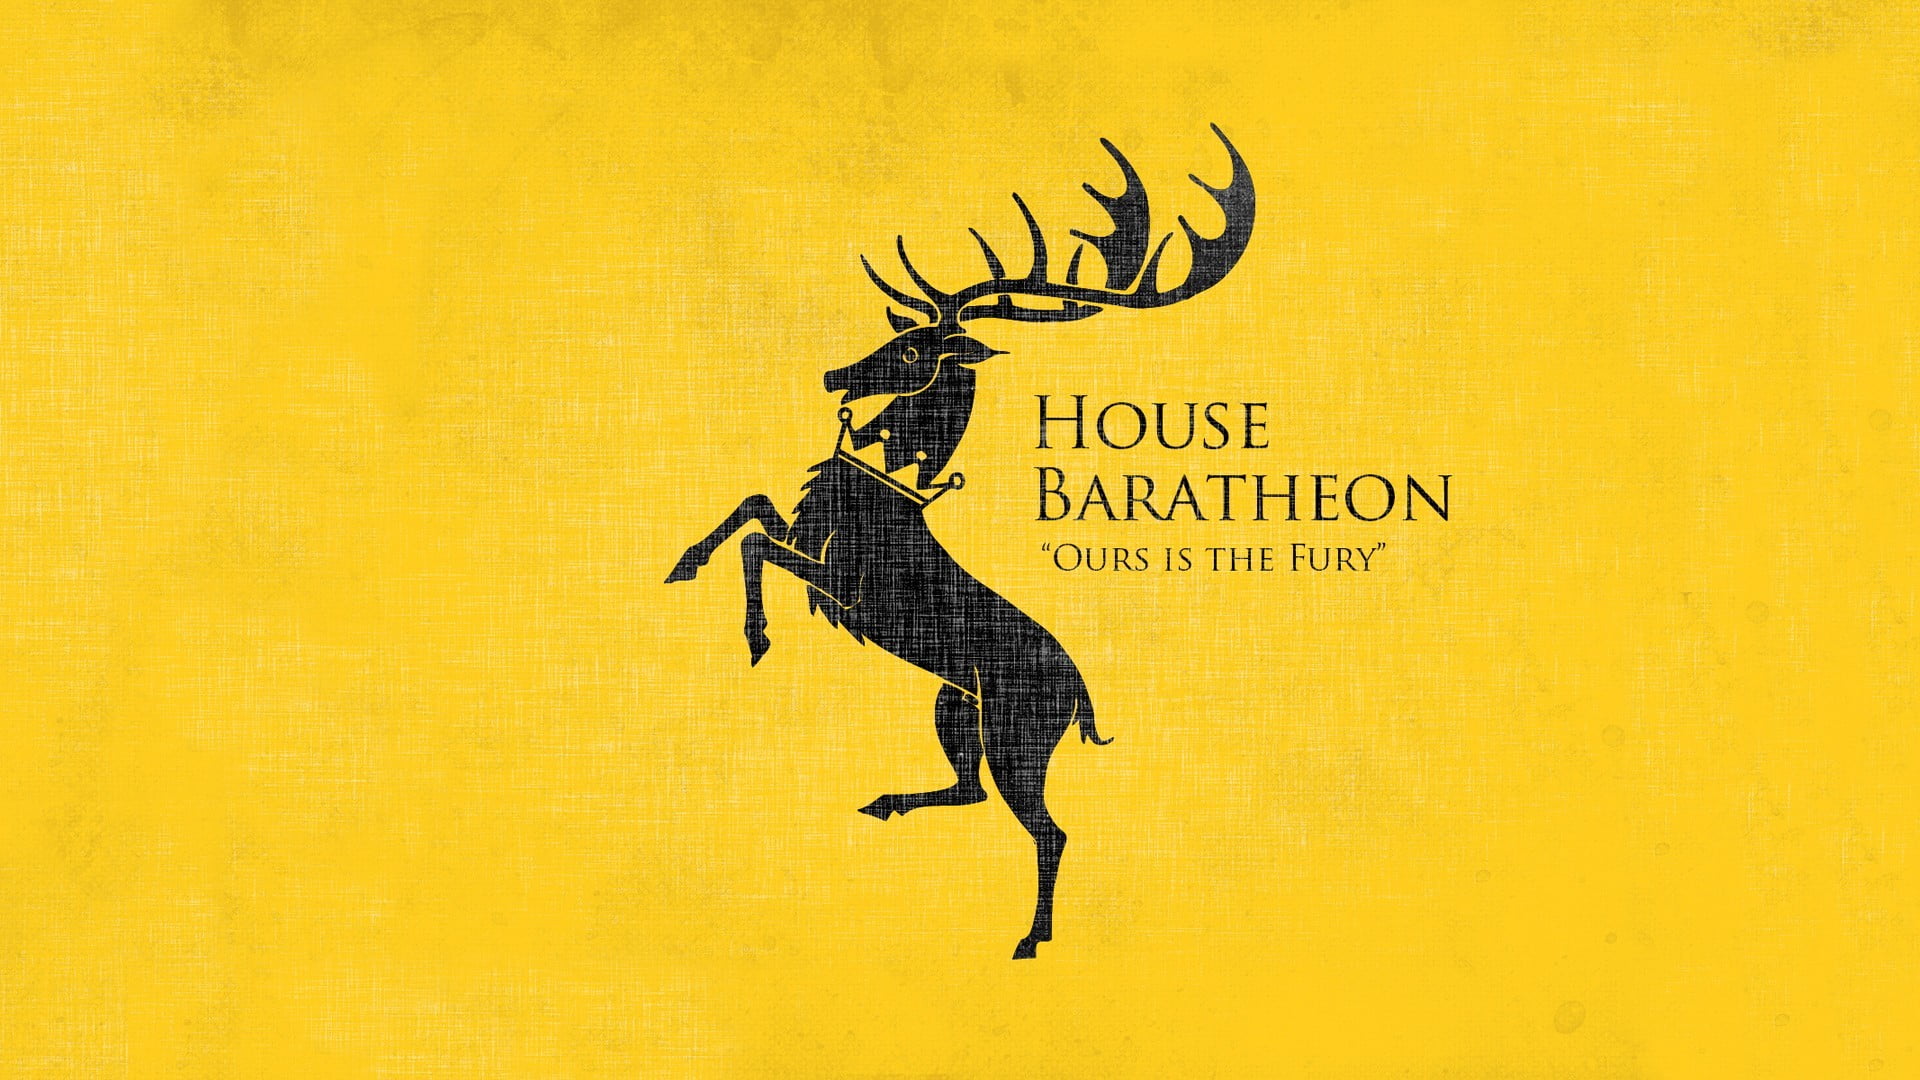 House Baratheon logo, Game of Thrones, sigils, yellow background